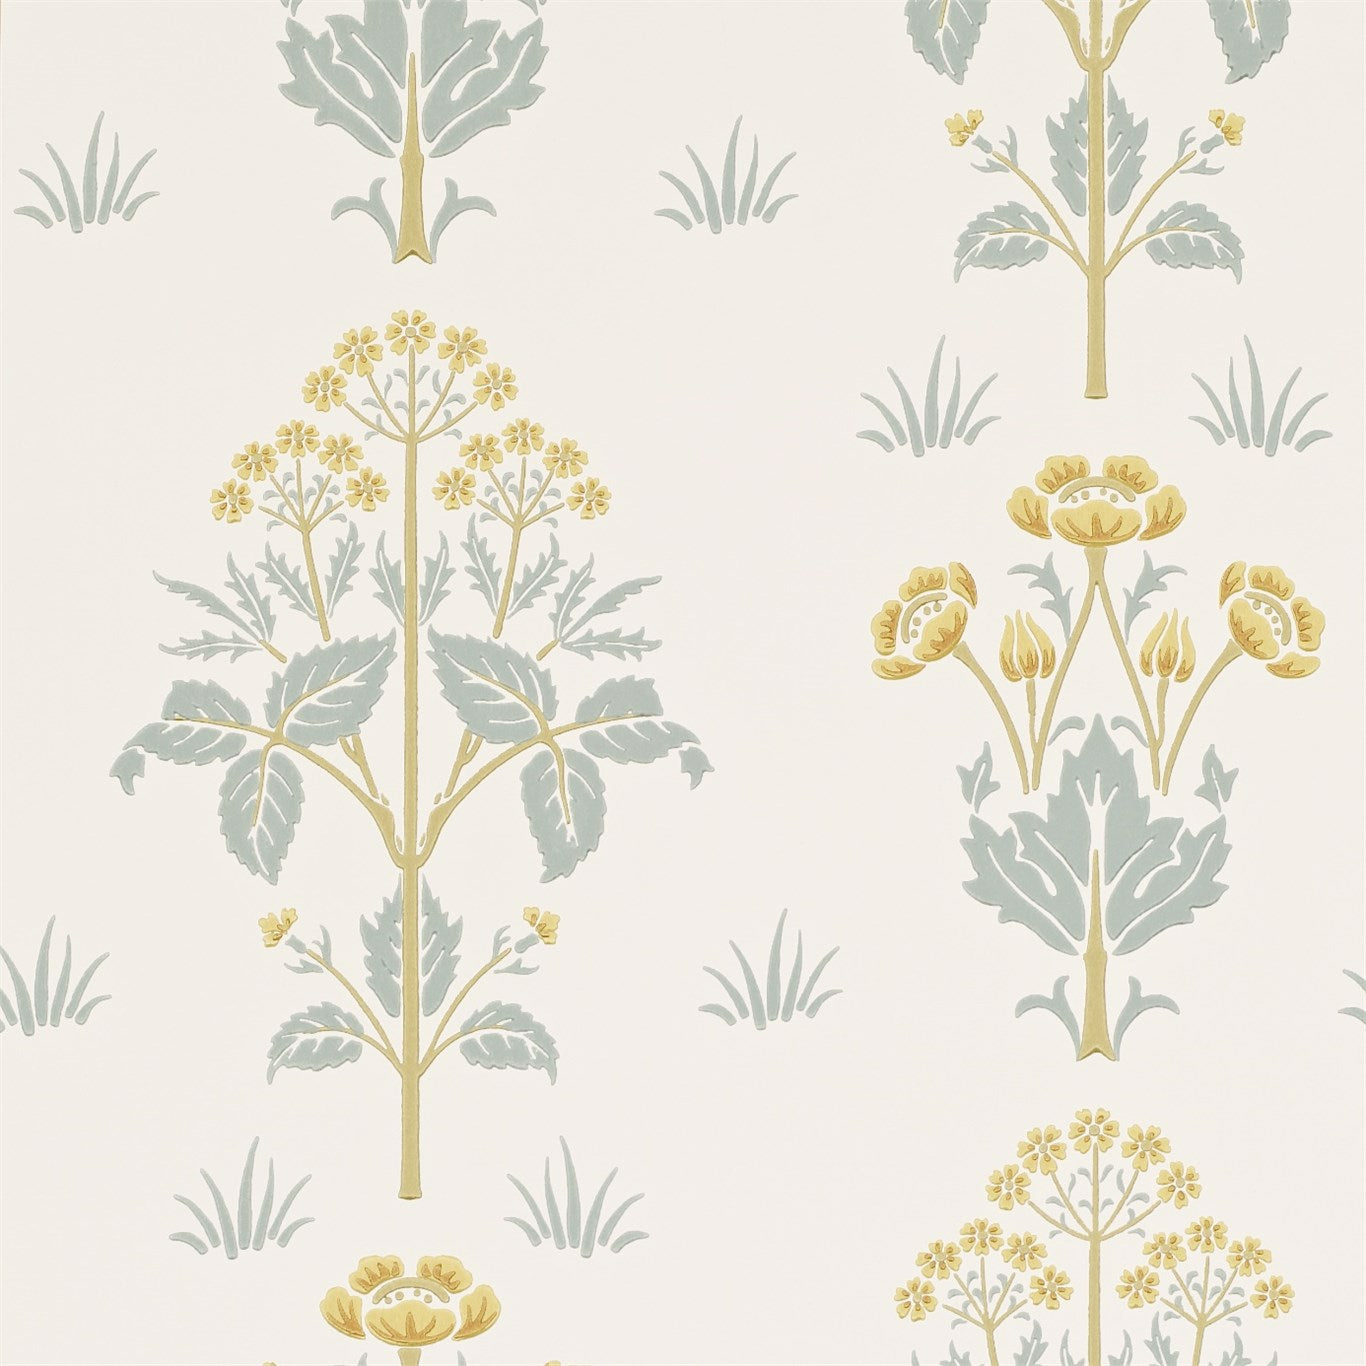 Meadow Sweet Wallpaper by Morris & Co